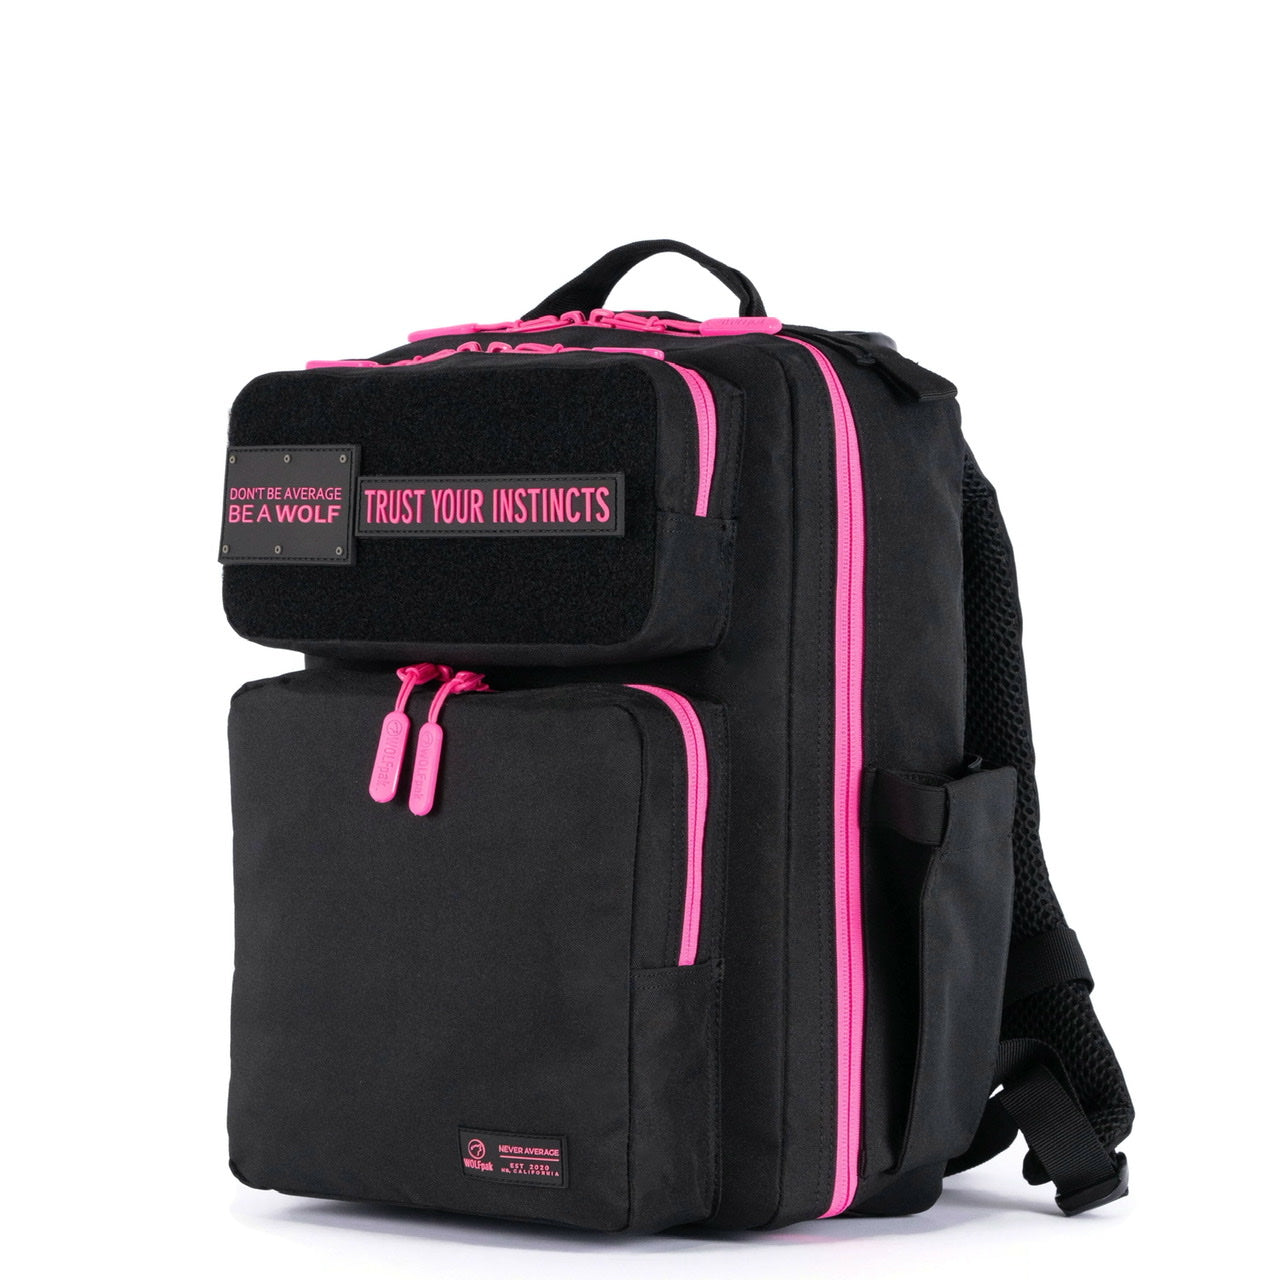 15L Backpack Black Neon Pink